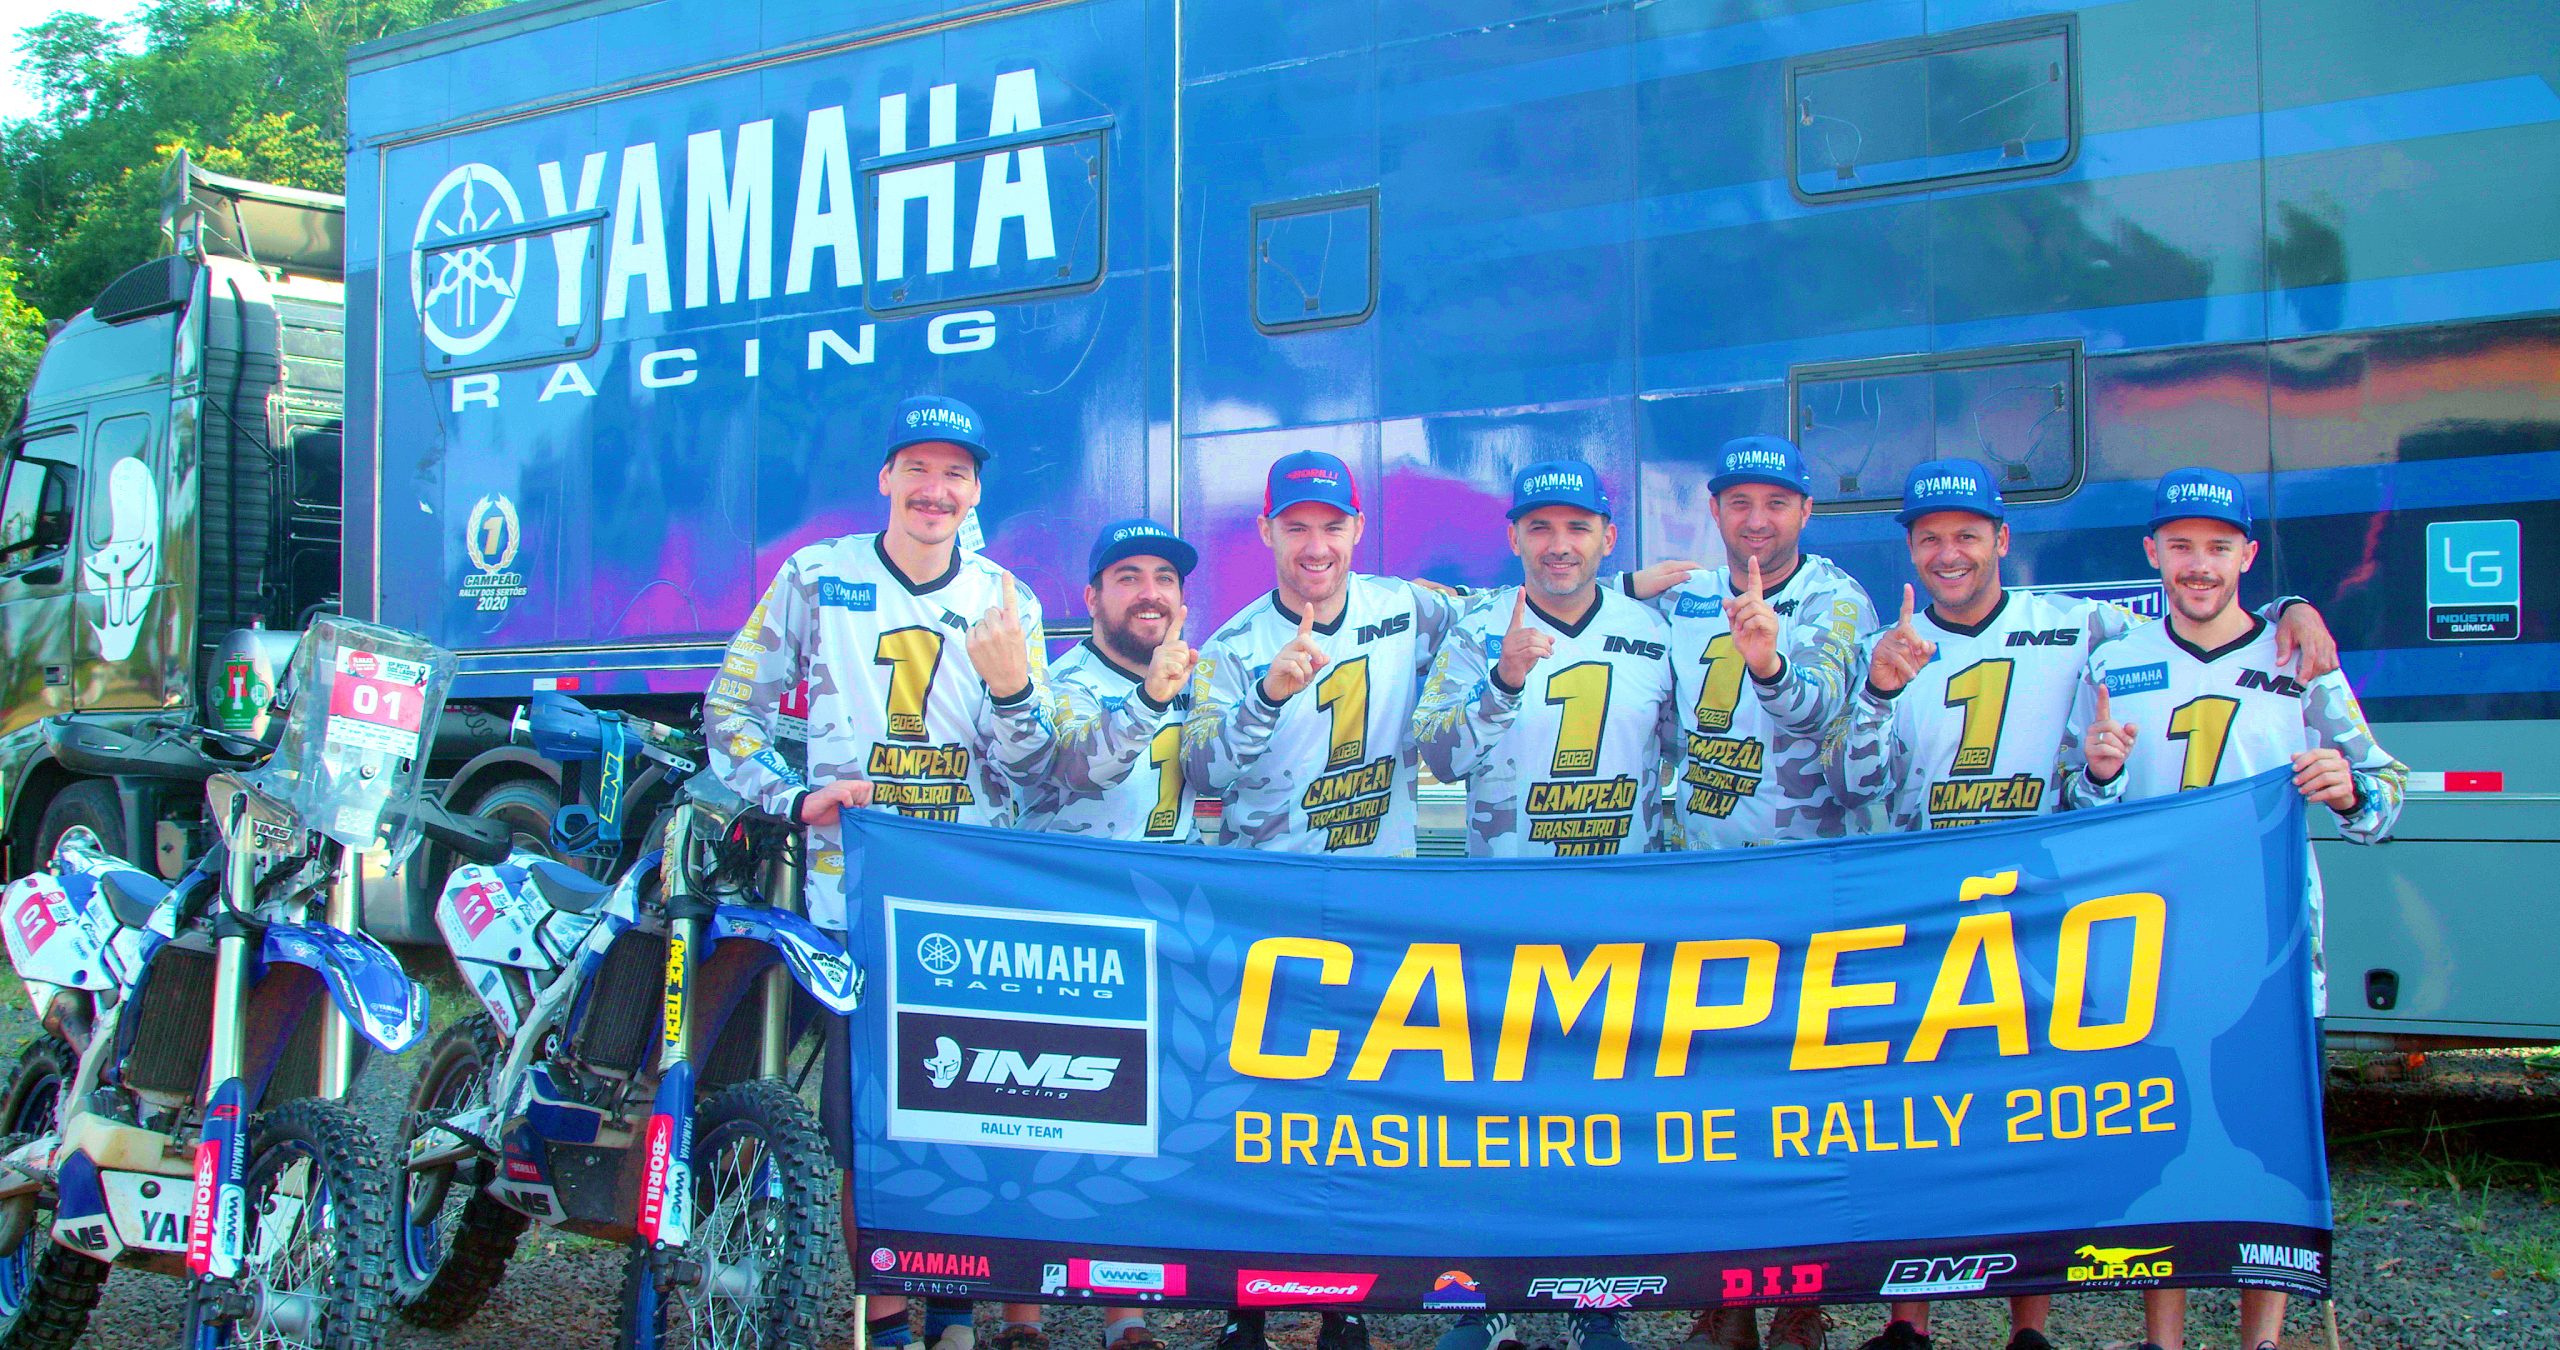 Últimas Notícias - Team Yamaha USA amarelou geral - MotoX